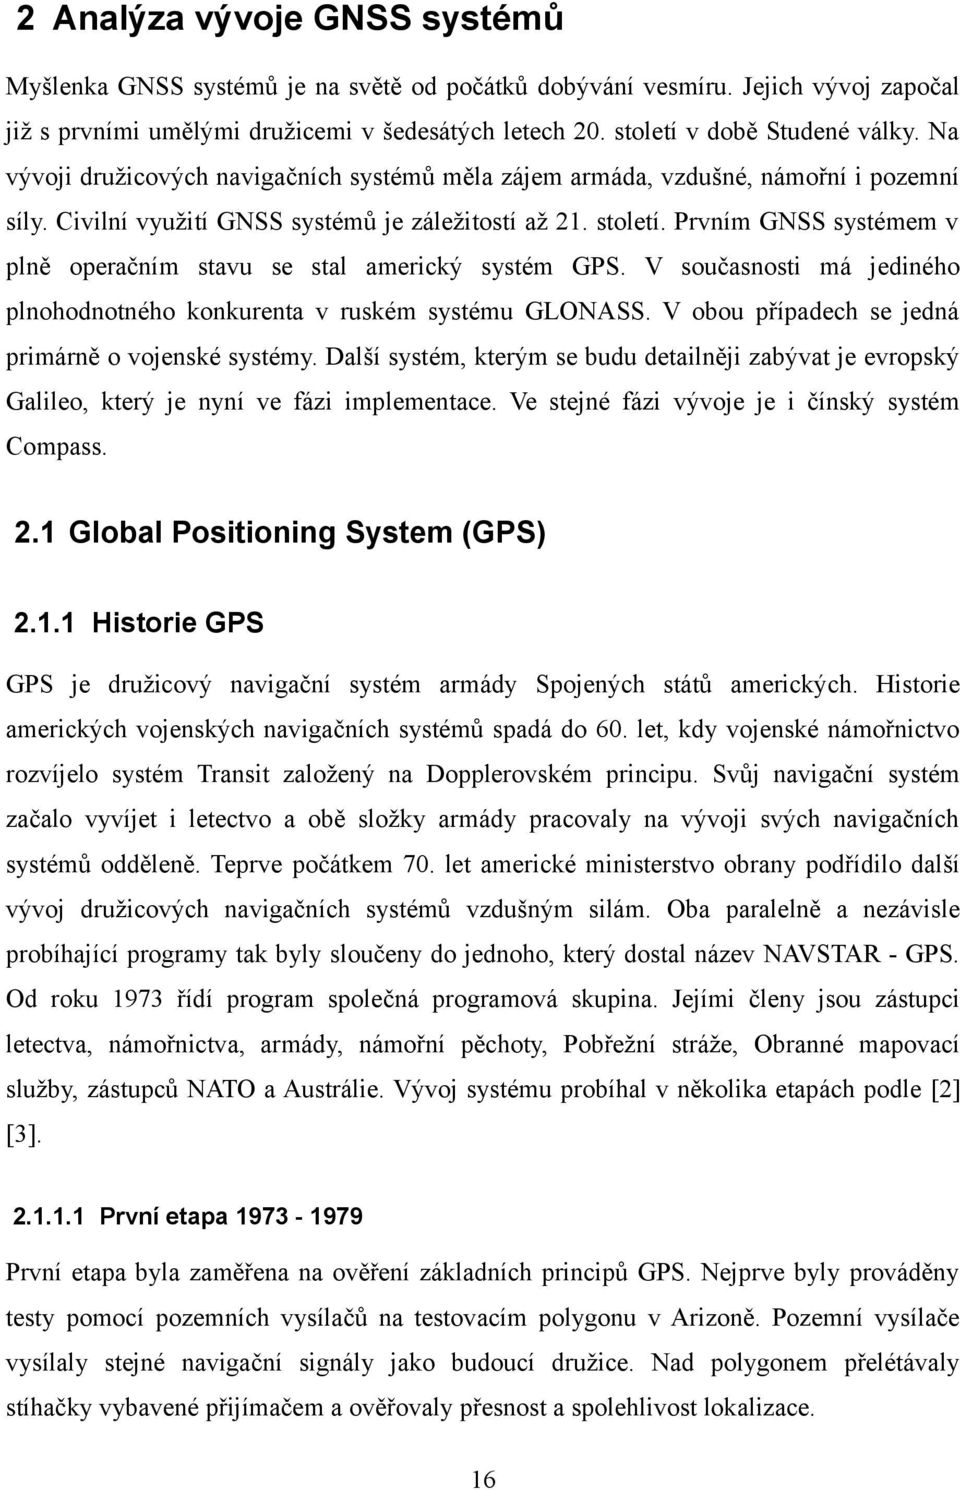 Prvním GNSS systémem v plně operačním stavu se stal americký systém GPS. V současnosti má jediného plnohodnotného konkurenta v ruském systému GLONASS.